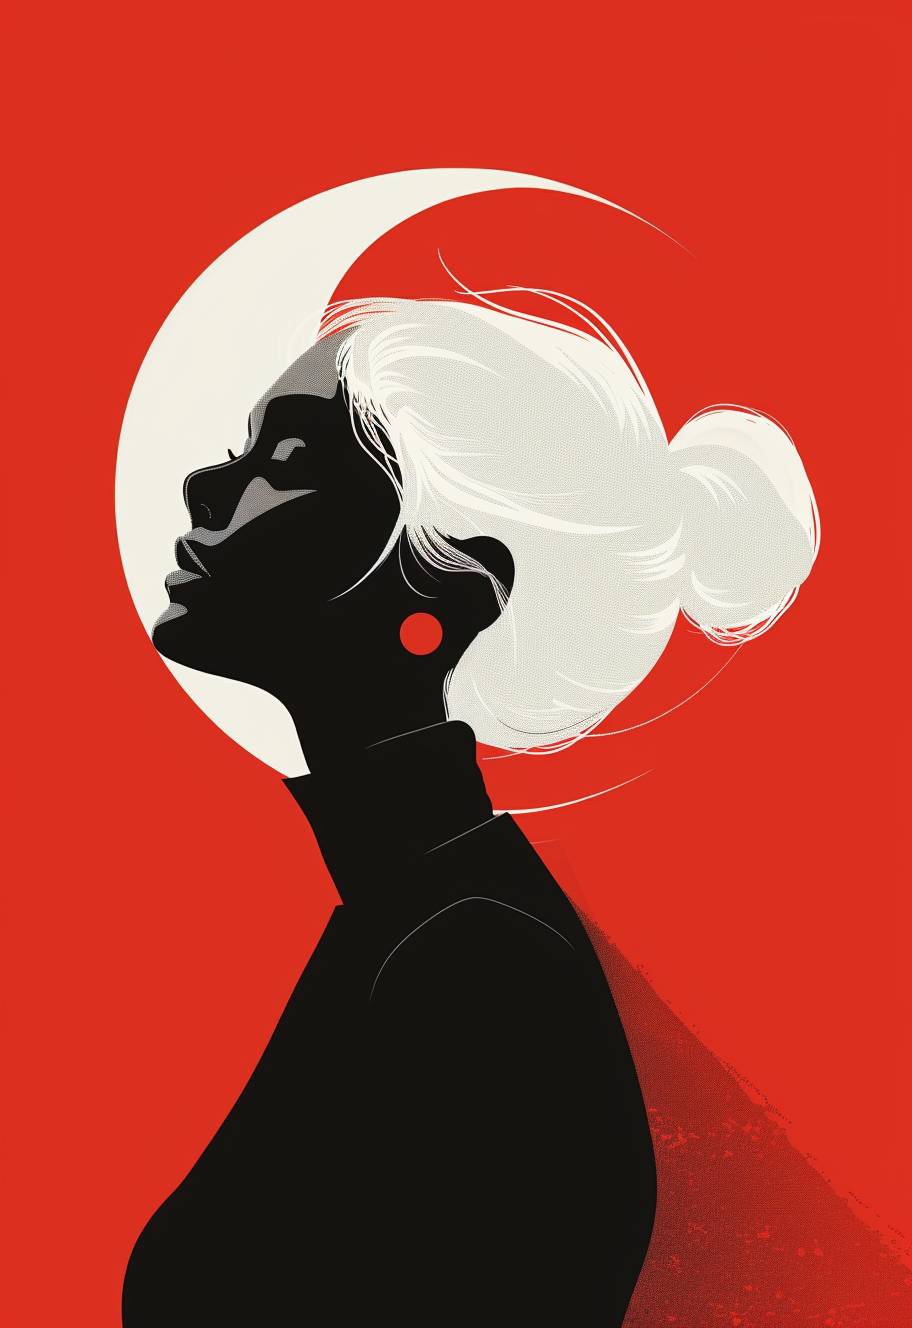 白い髪の女性を描いたミニマリストのレトロイラスト、白黒のカラーパレット、赤い背景に対するダークなコントラスト、シンプルな形状の超現実主義的なスタイル。